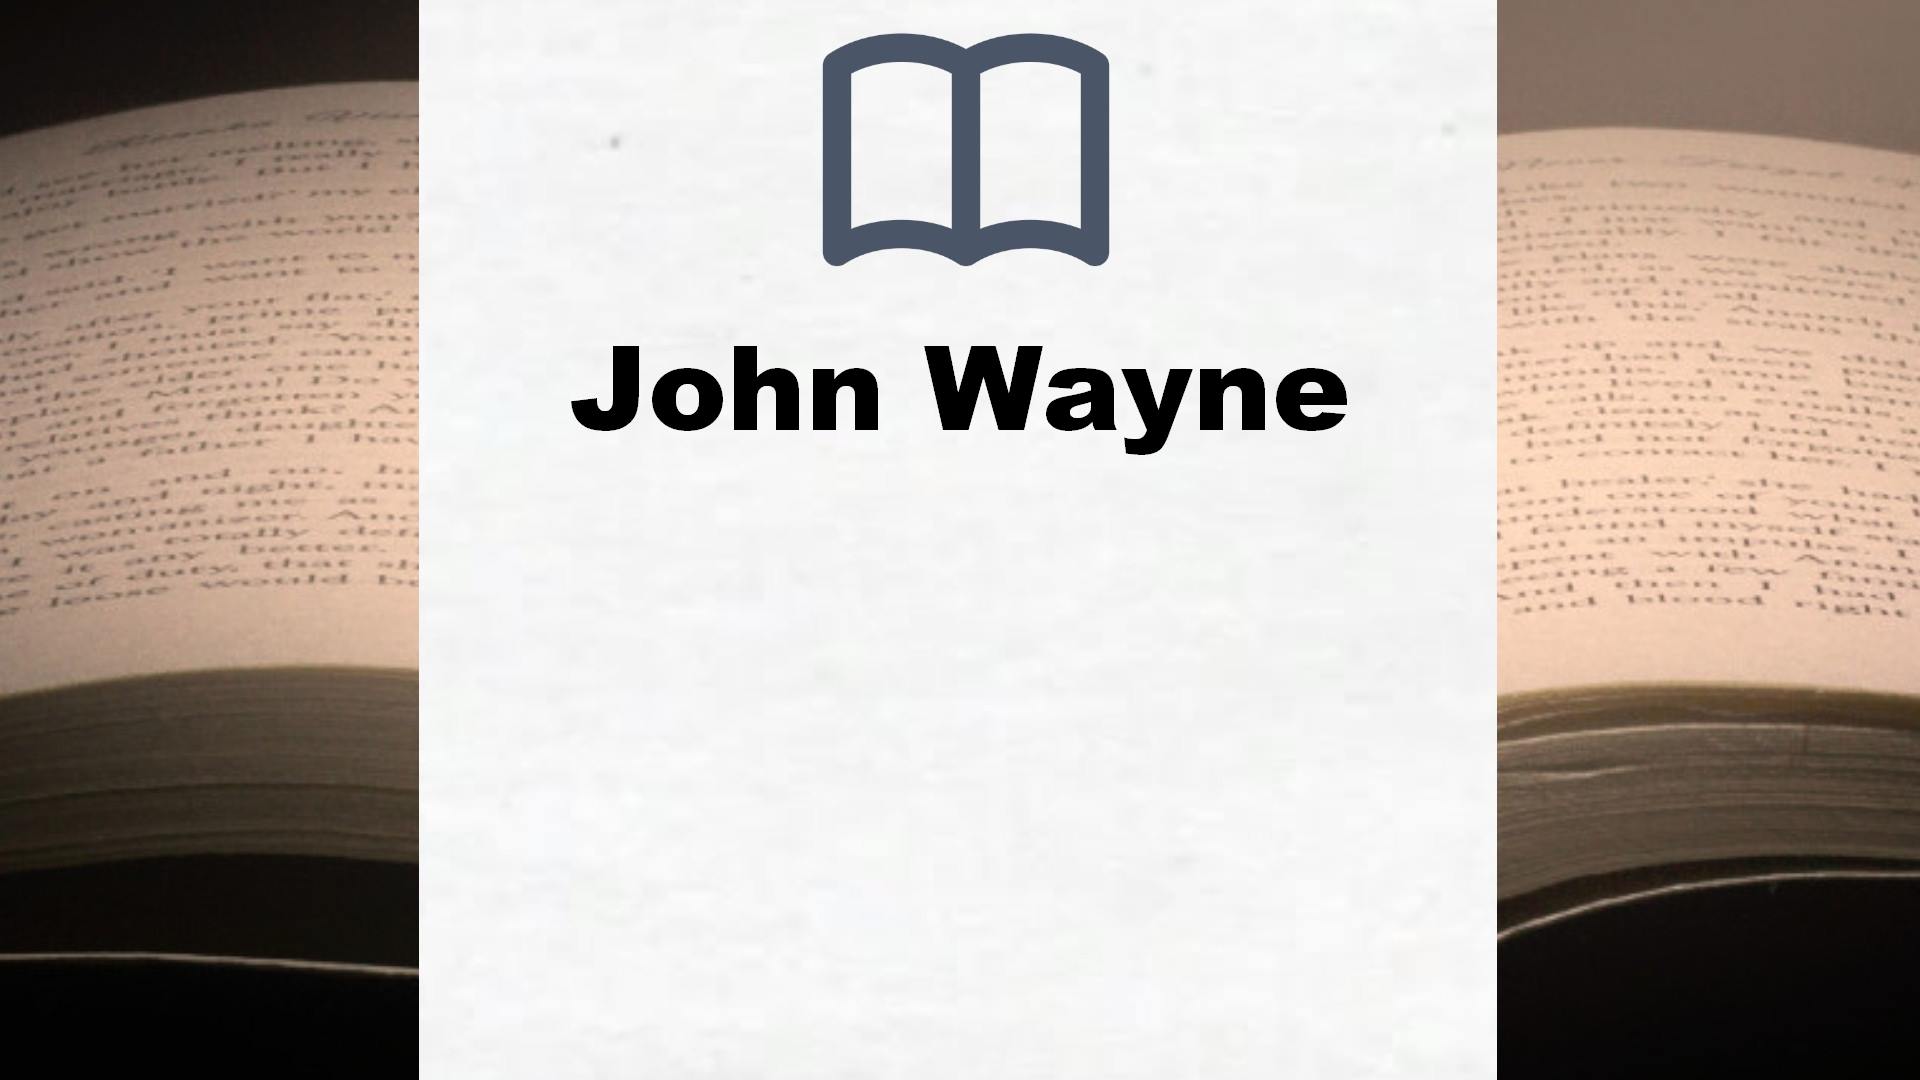 Bücher über John Wayne